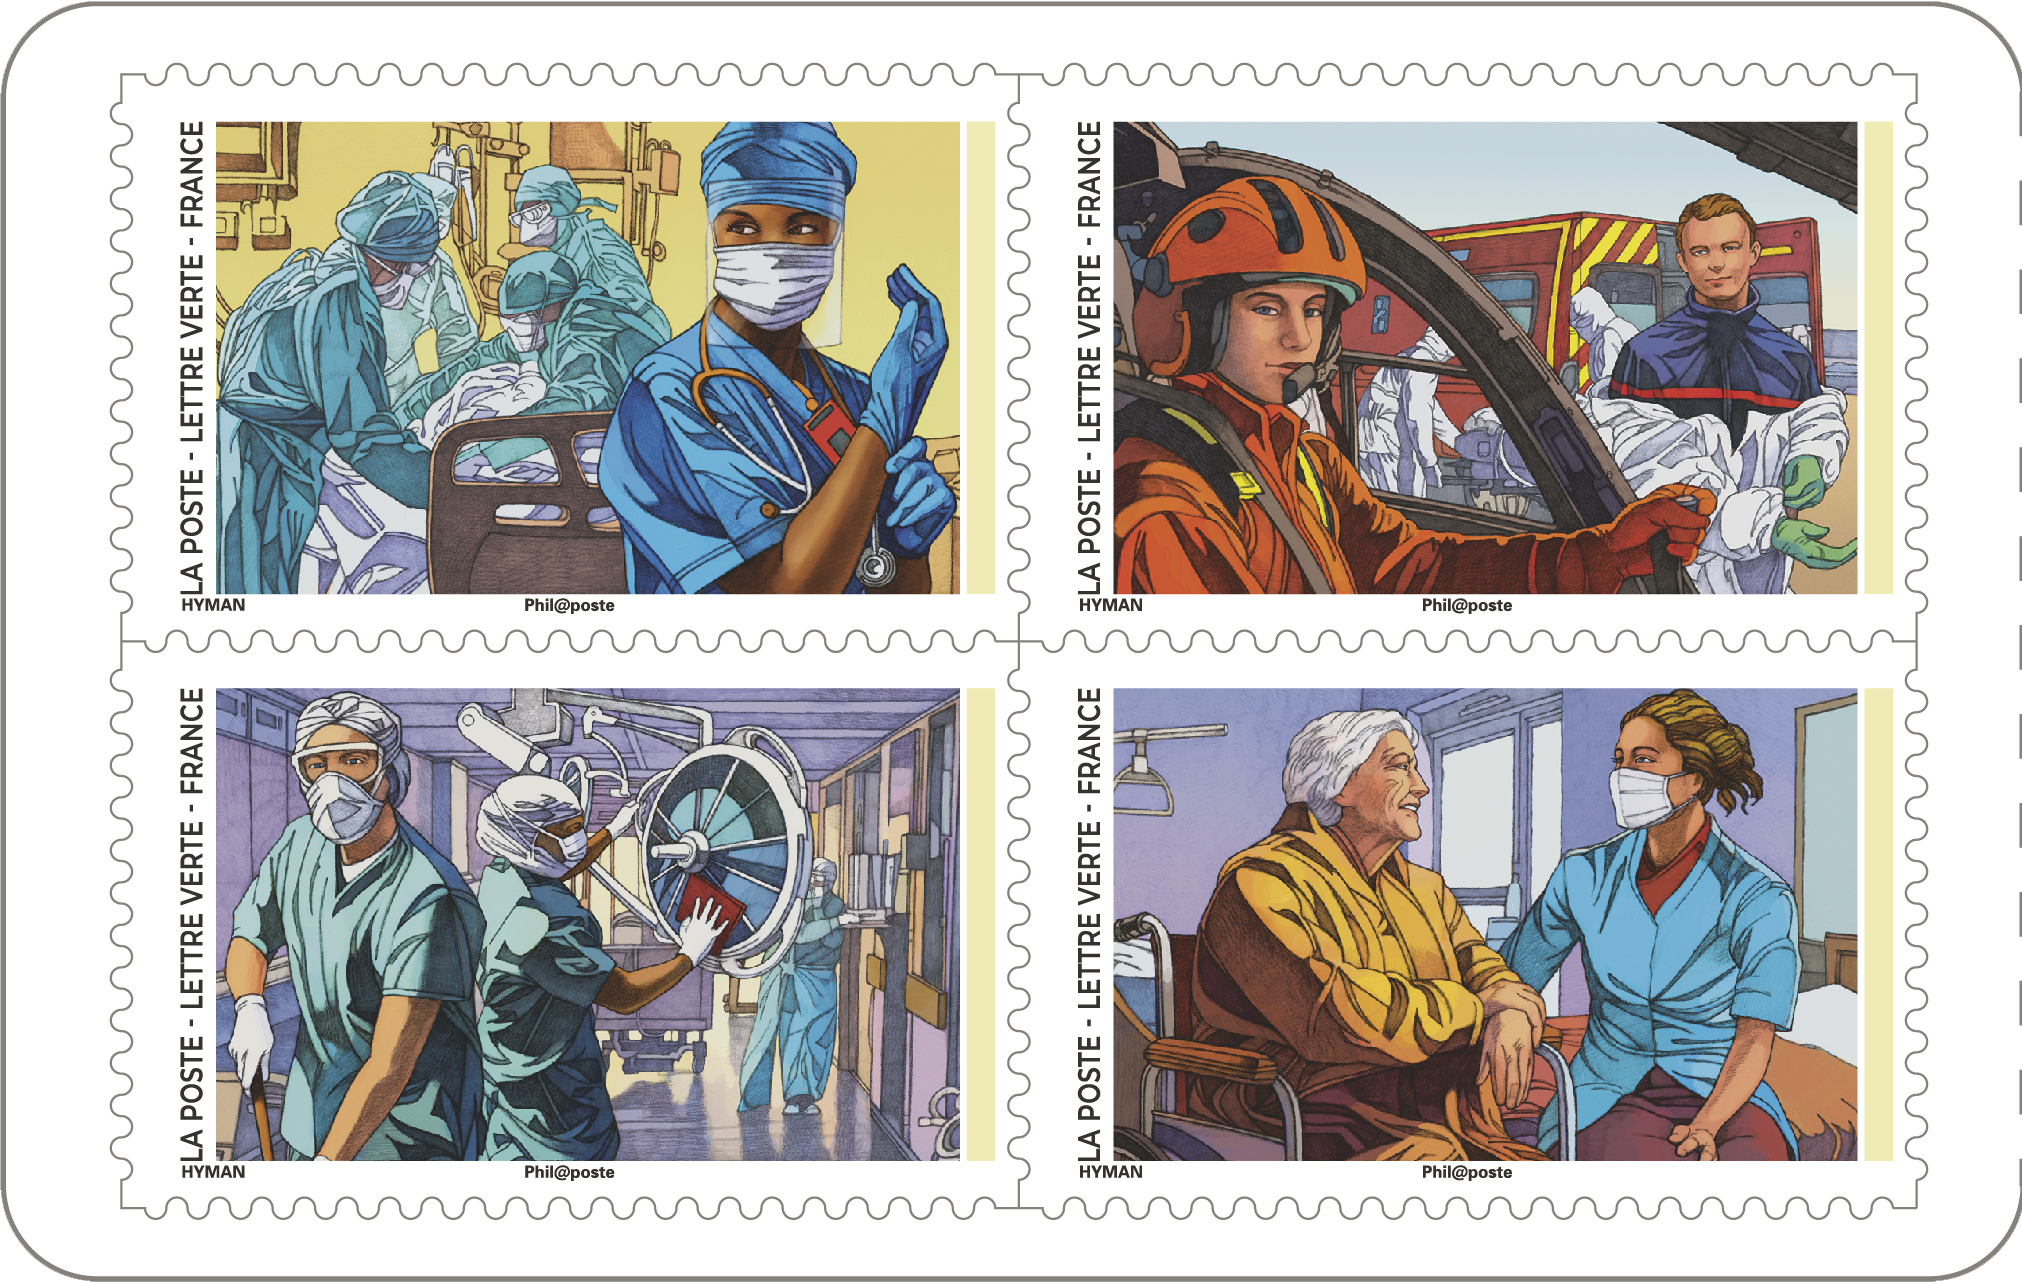 La Poste émet un carnet de timbres # tous engagés remerciant et